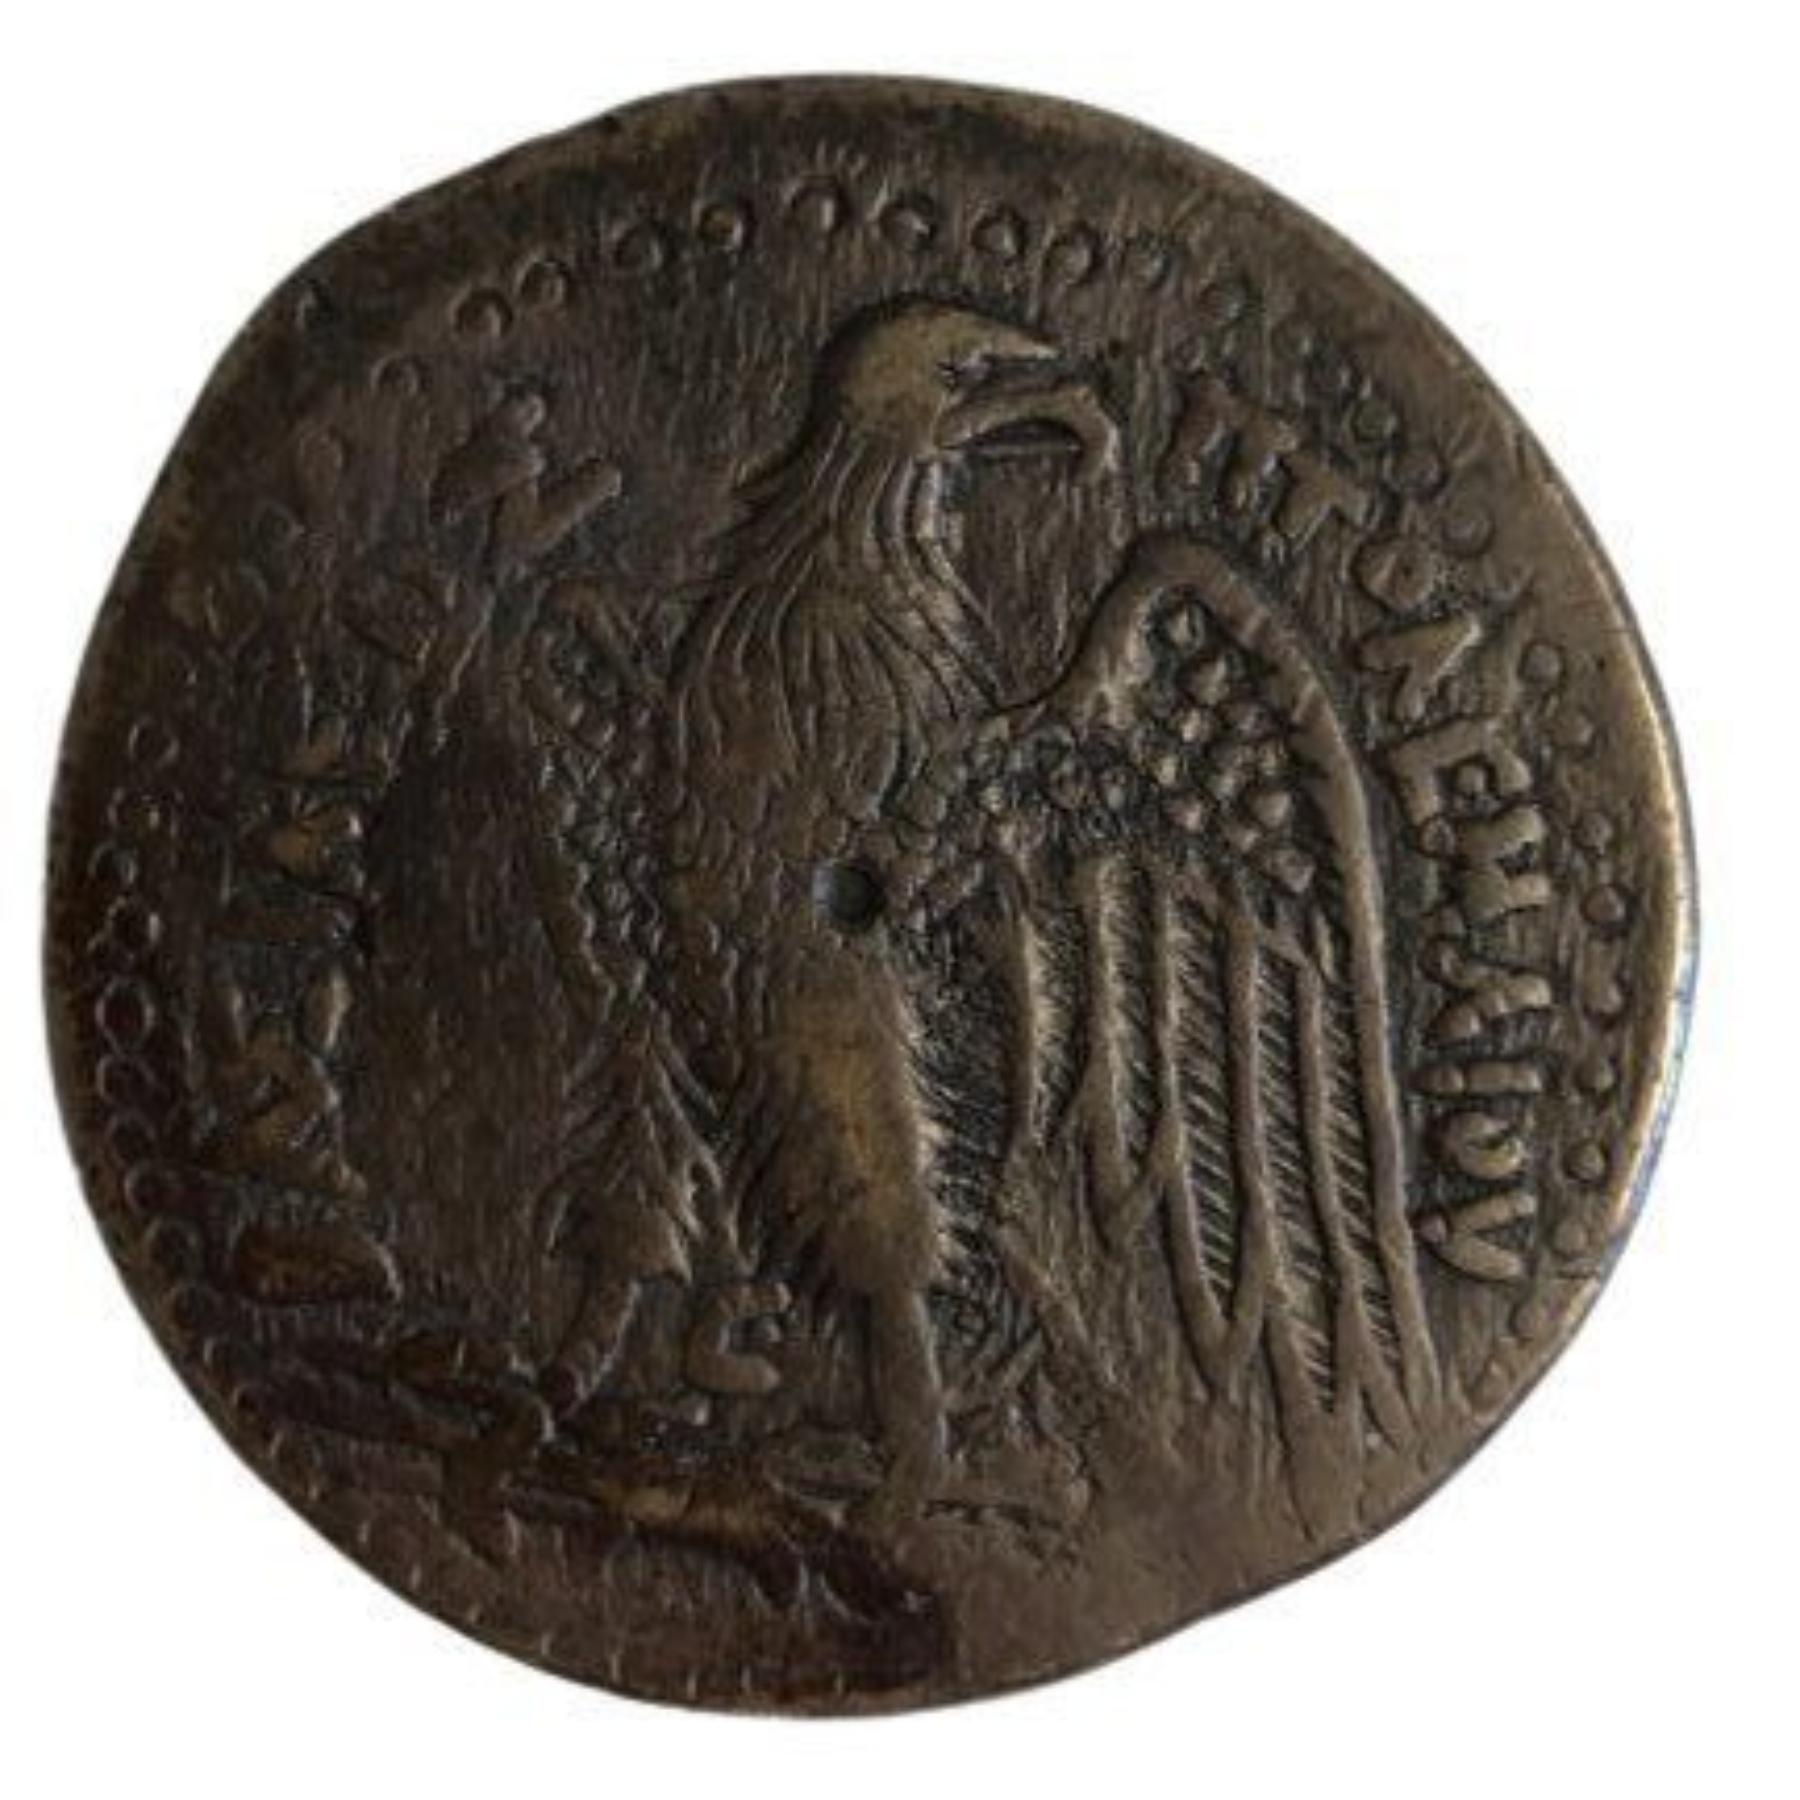 Dies ist eine der größten antiken Münzen überhaupt. Sehr selten und schwer zu finden. Es ist in einem ausgezeichneten Zustand mit vielen Details zu zeigen. Die Münze ist etwa 44,5 Millimeter breit und wiegt 94,5 Gramm. Herausragende Münze in Bezug